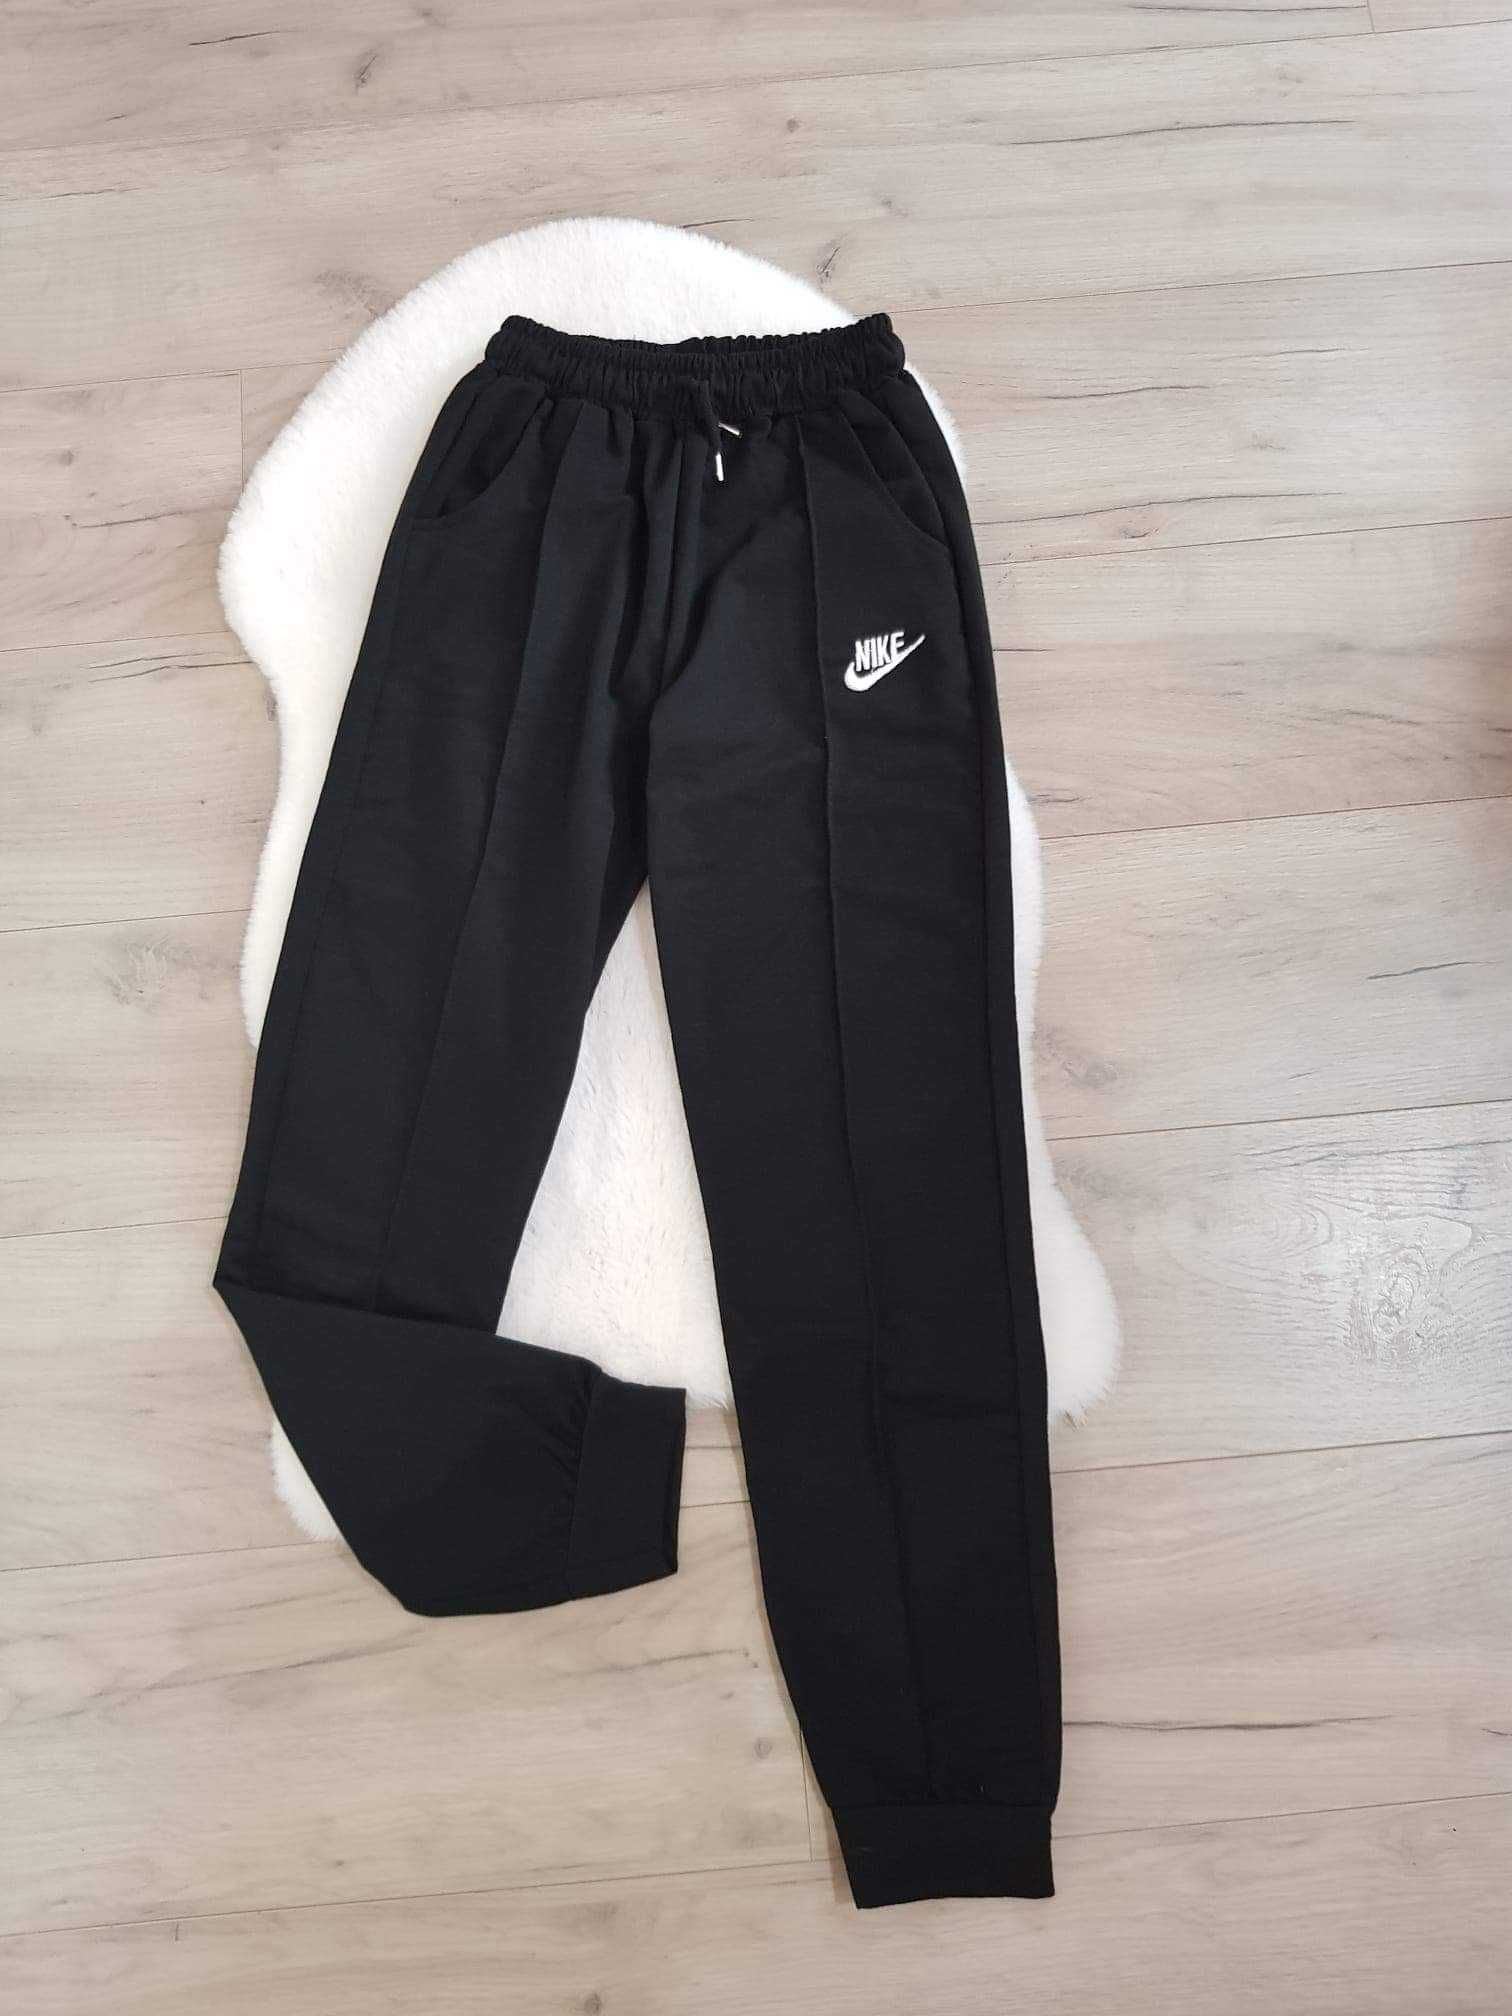 Pantaloni Nike sigla cusuta - 80 lei